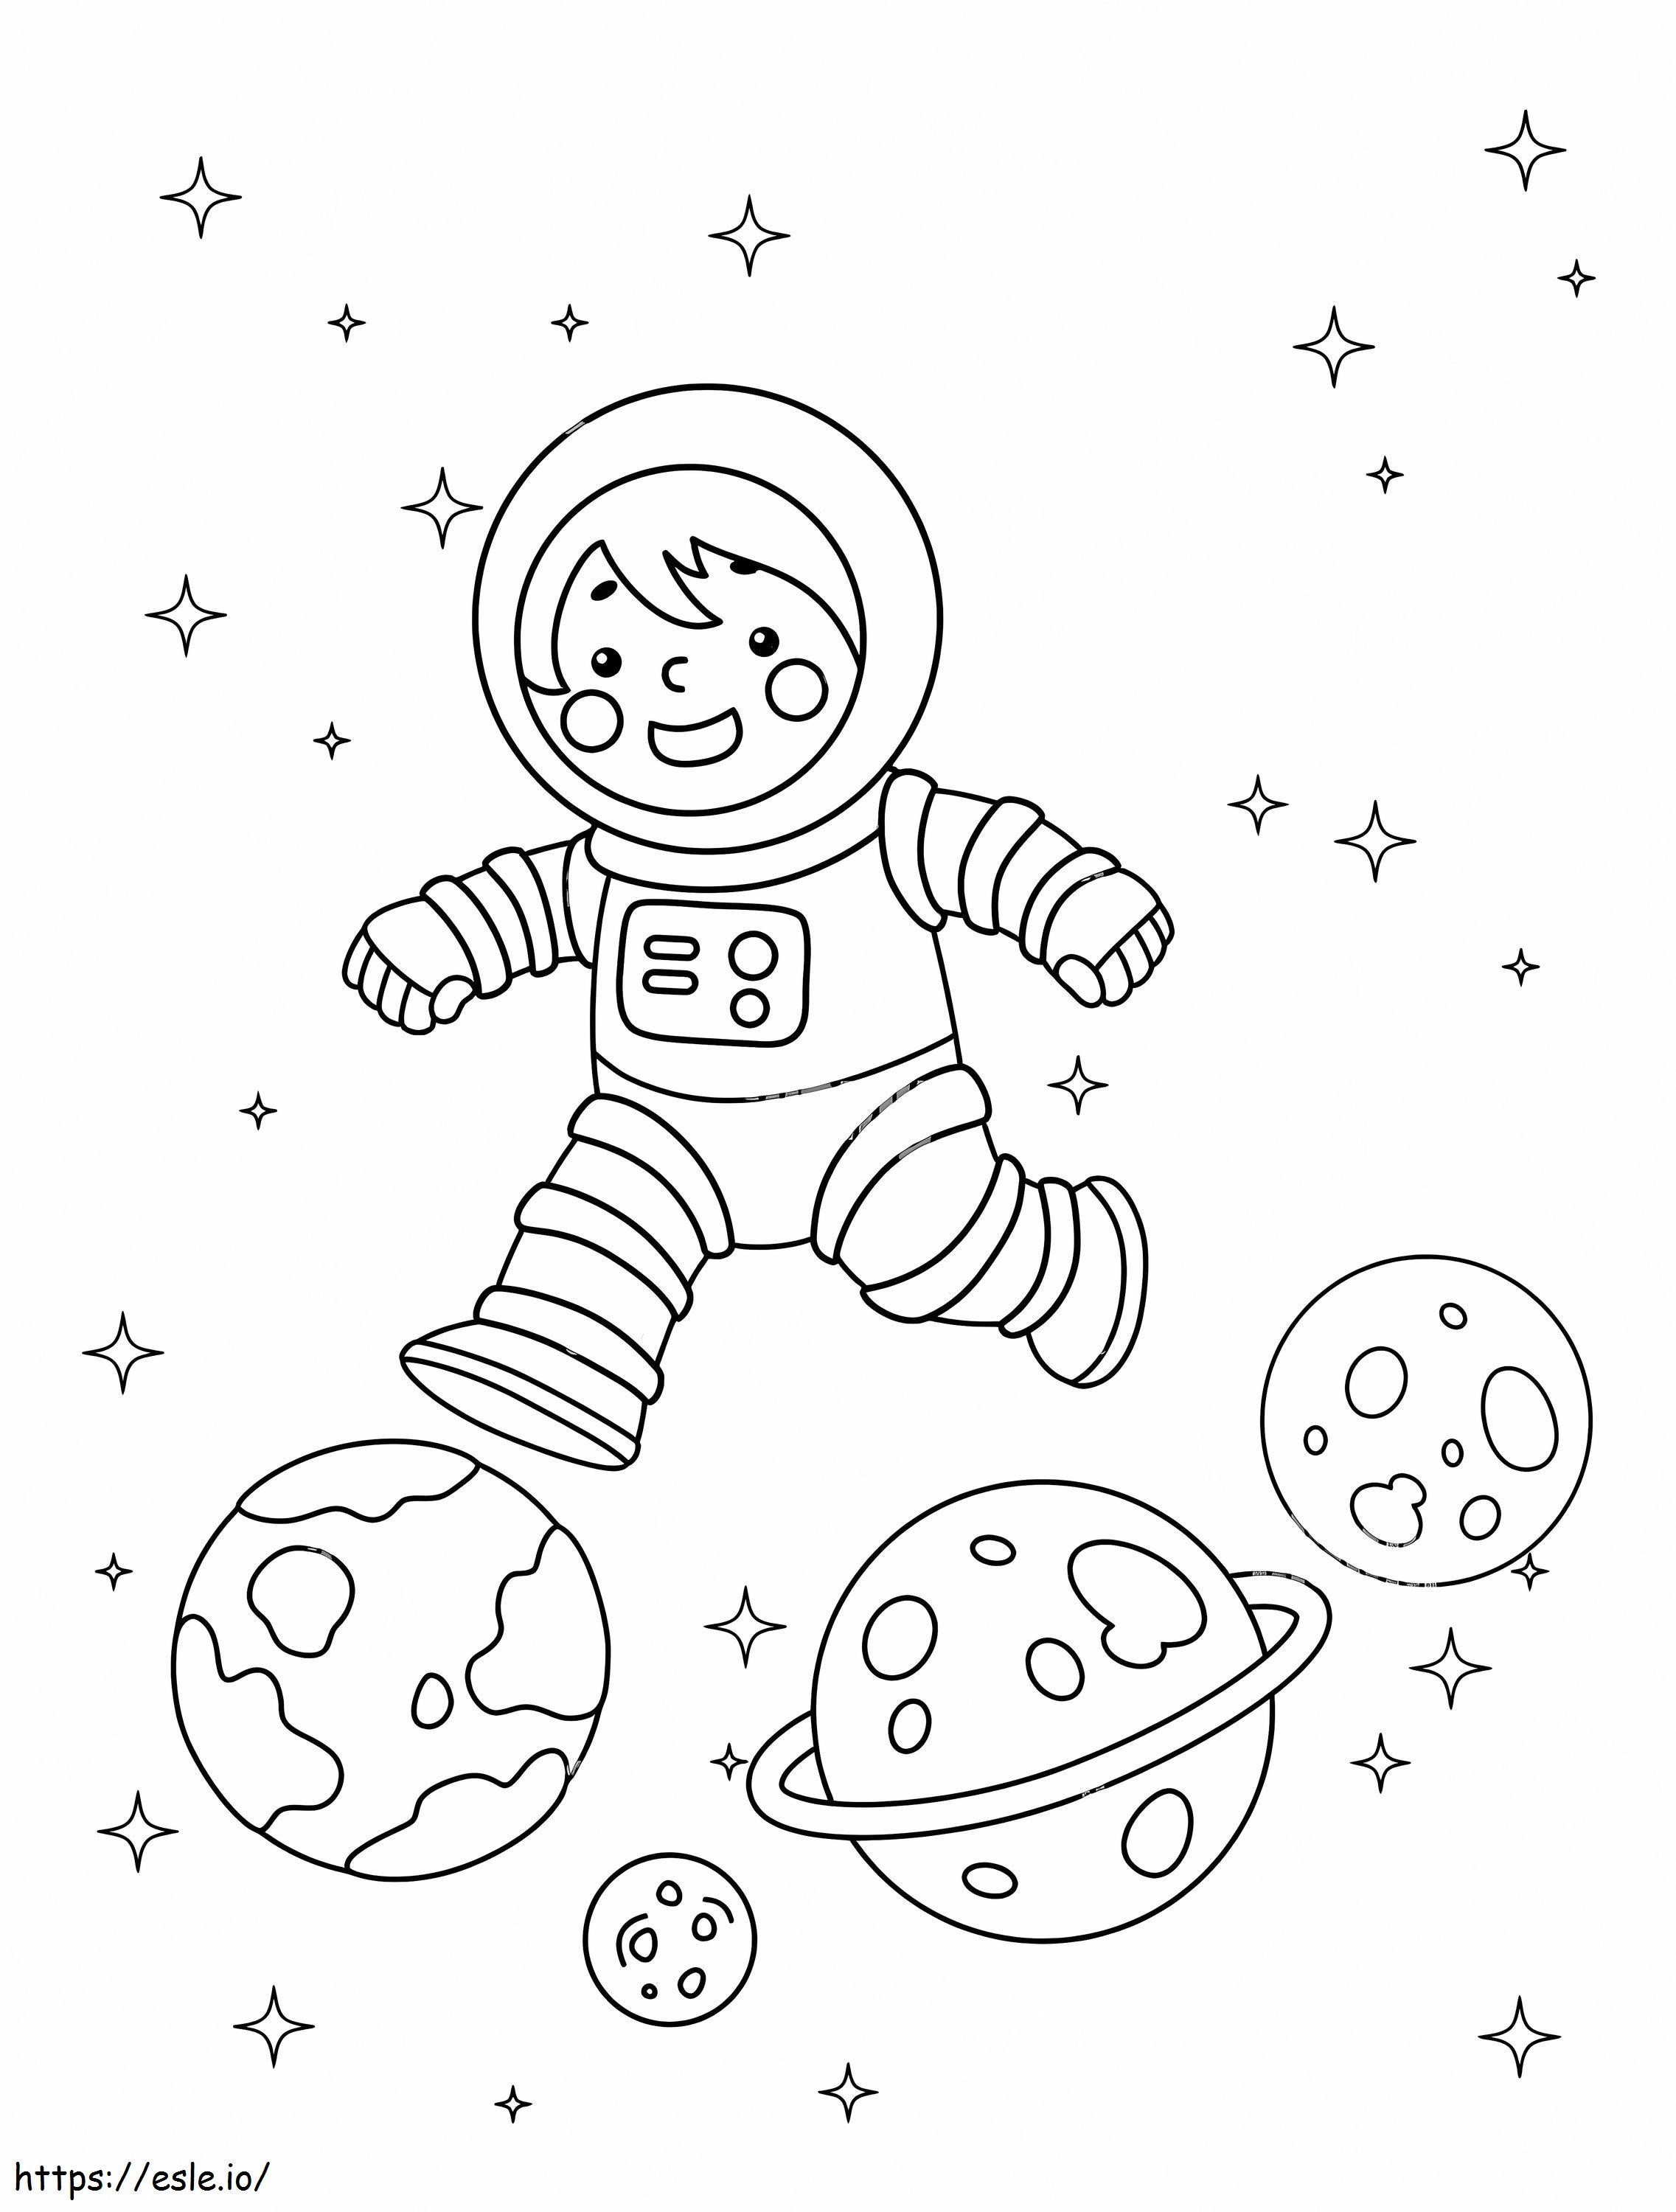 L'astronauta e i pianeti da colorare